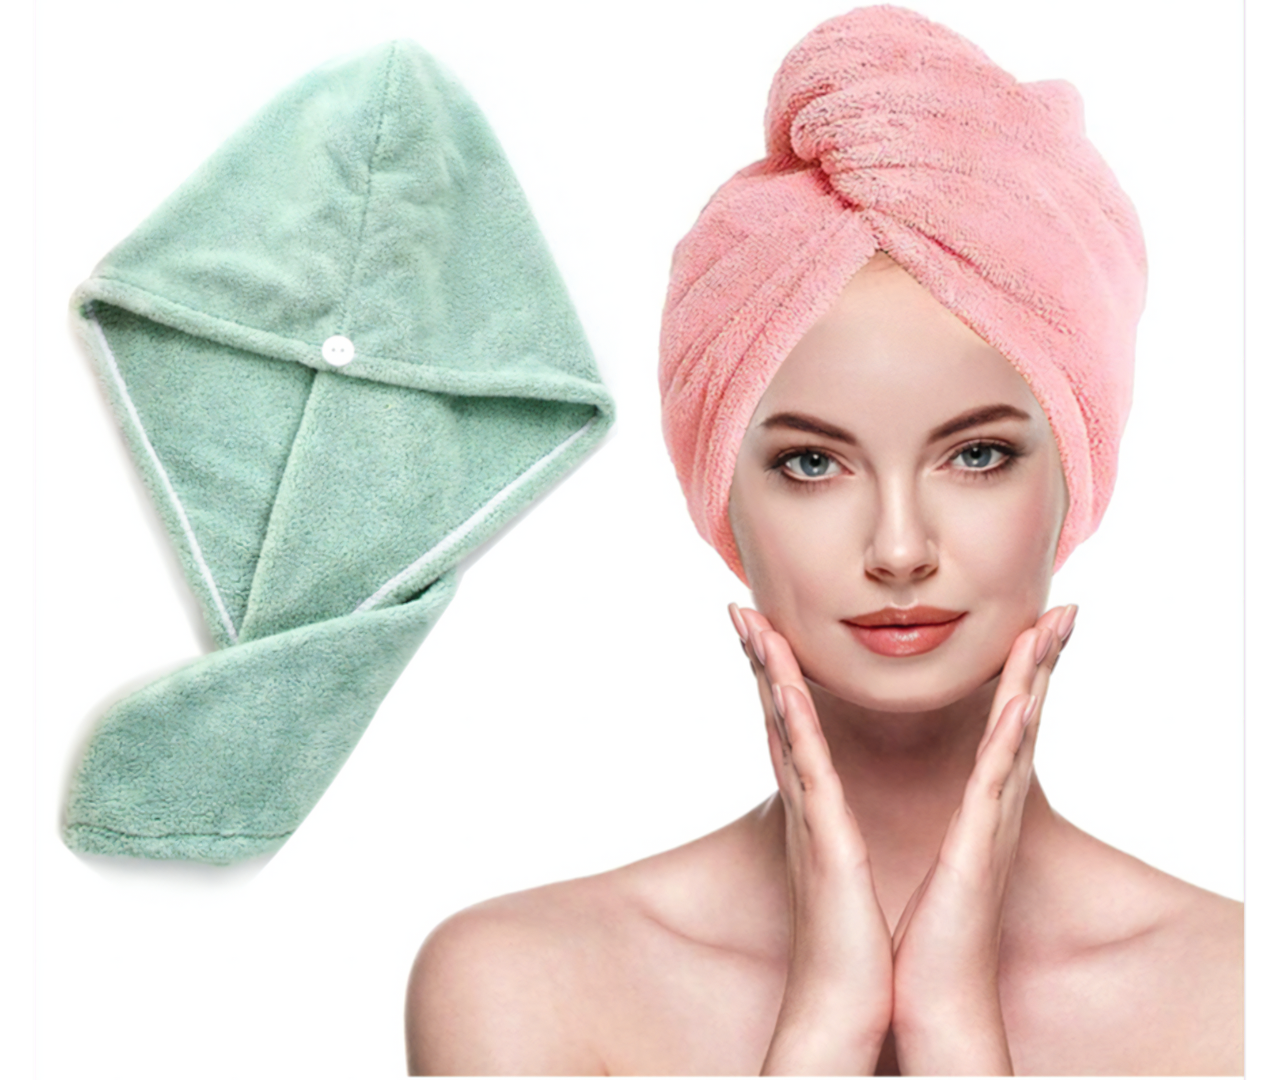 Séchez vos cheveux en un temps record avec notre lot de 3 serviettes en microfibre ultra-absorbantes pour un séchage rapide !